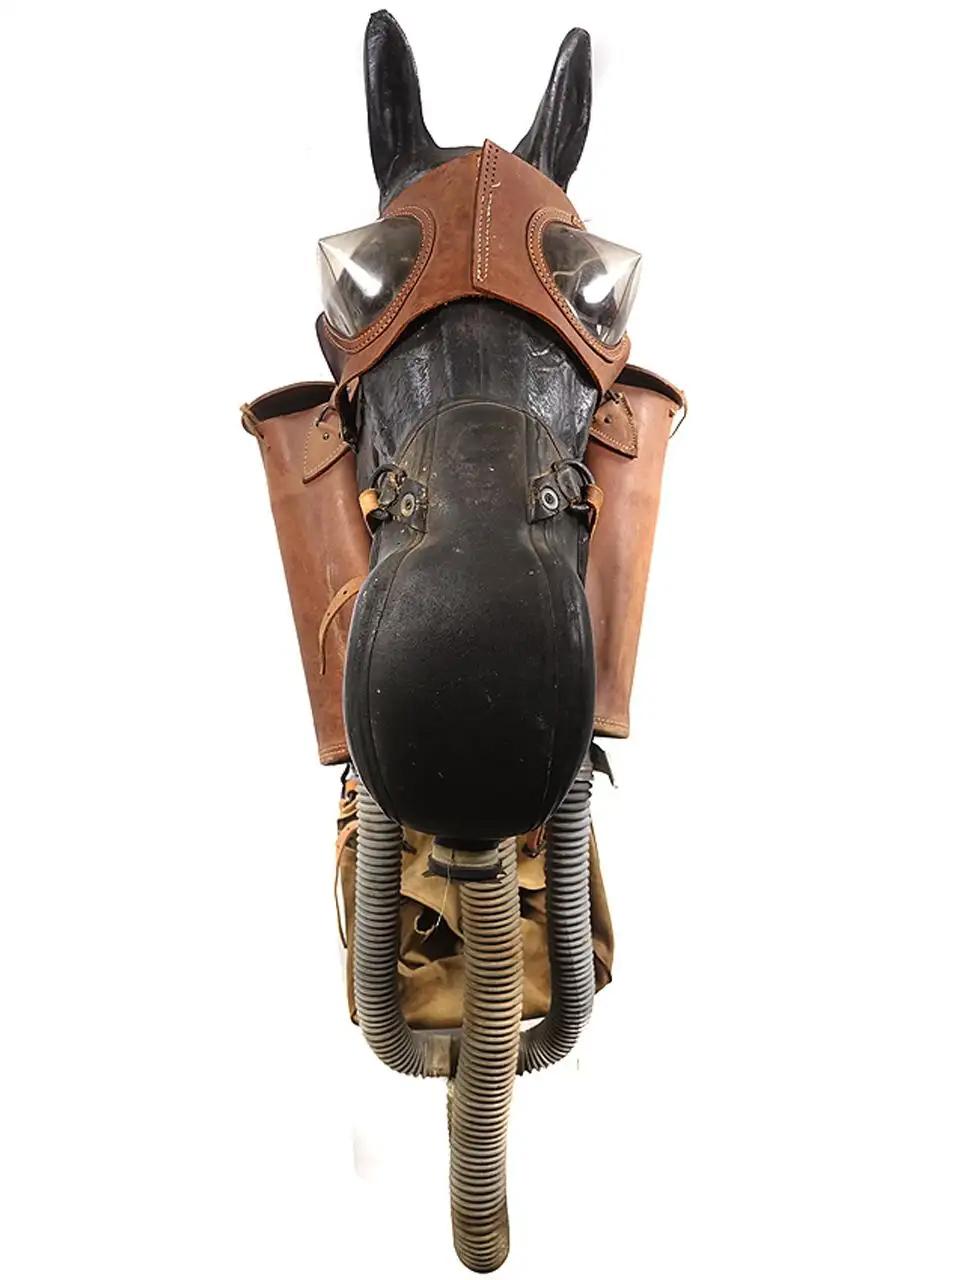 M4 US Government Army Issue World War II, Jahrgang 1941-1942 Pferdegasmasken sind sehr selten. Aufgrund ihrer Größe wurden die meisten nach dem Krieg ausrangiert. Gelegentlich taucht eines auf, aber die meisten sind unvollständig oder in schlechtem